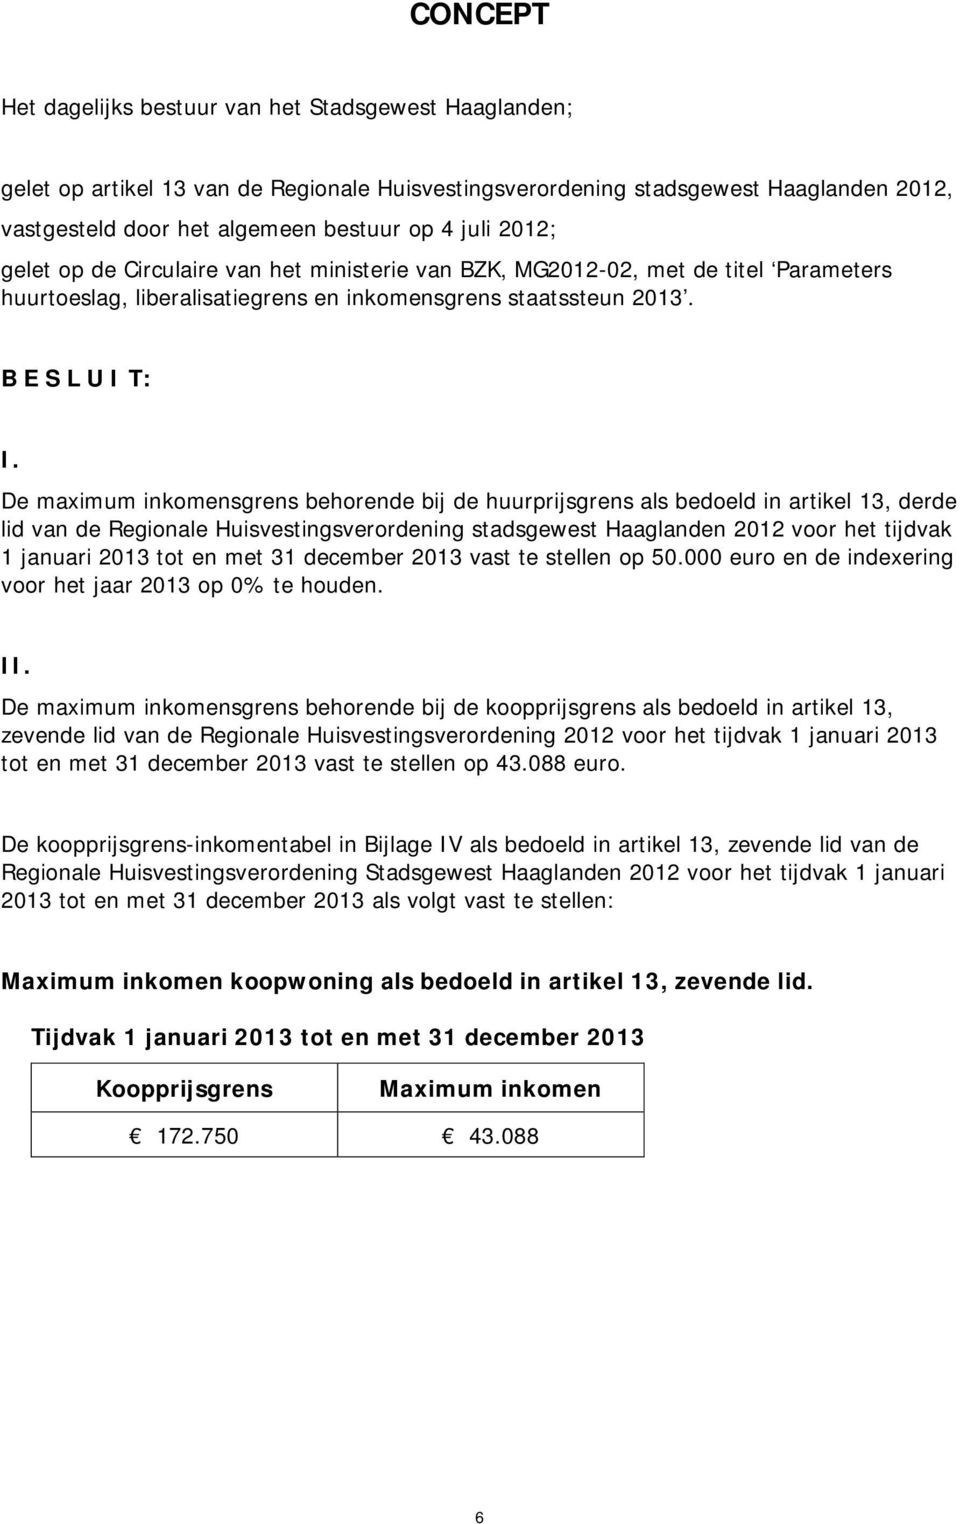 De maximum inkomensgrens behorende bij de huurprijsgrens als bedoeld in artikel 13, derde lid van de Regionale Huisvestingsverordening stadsgewest Haaglanden 2012 voor het tijdvak 1 januari 2013 tot